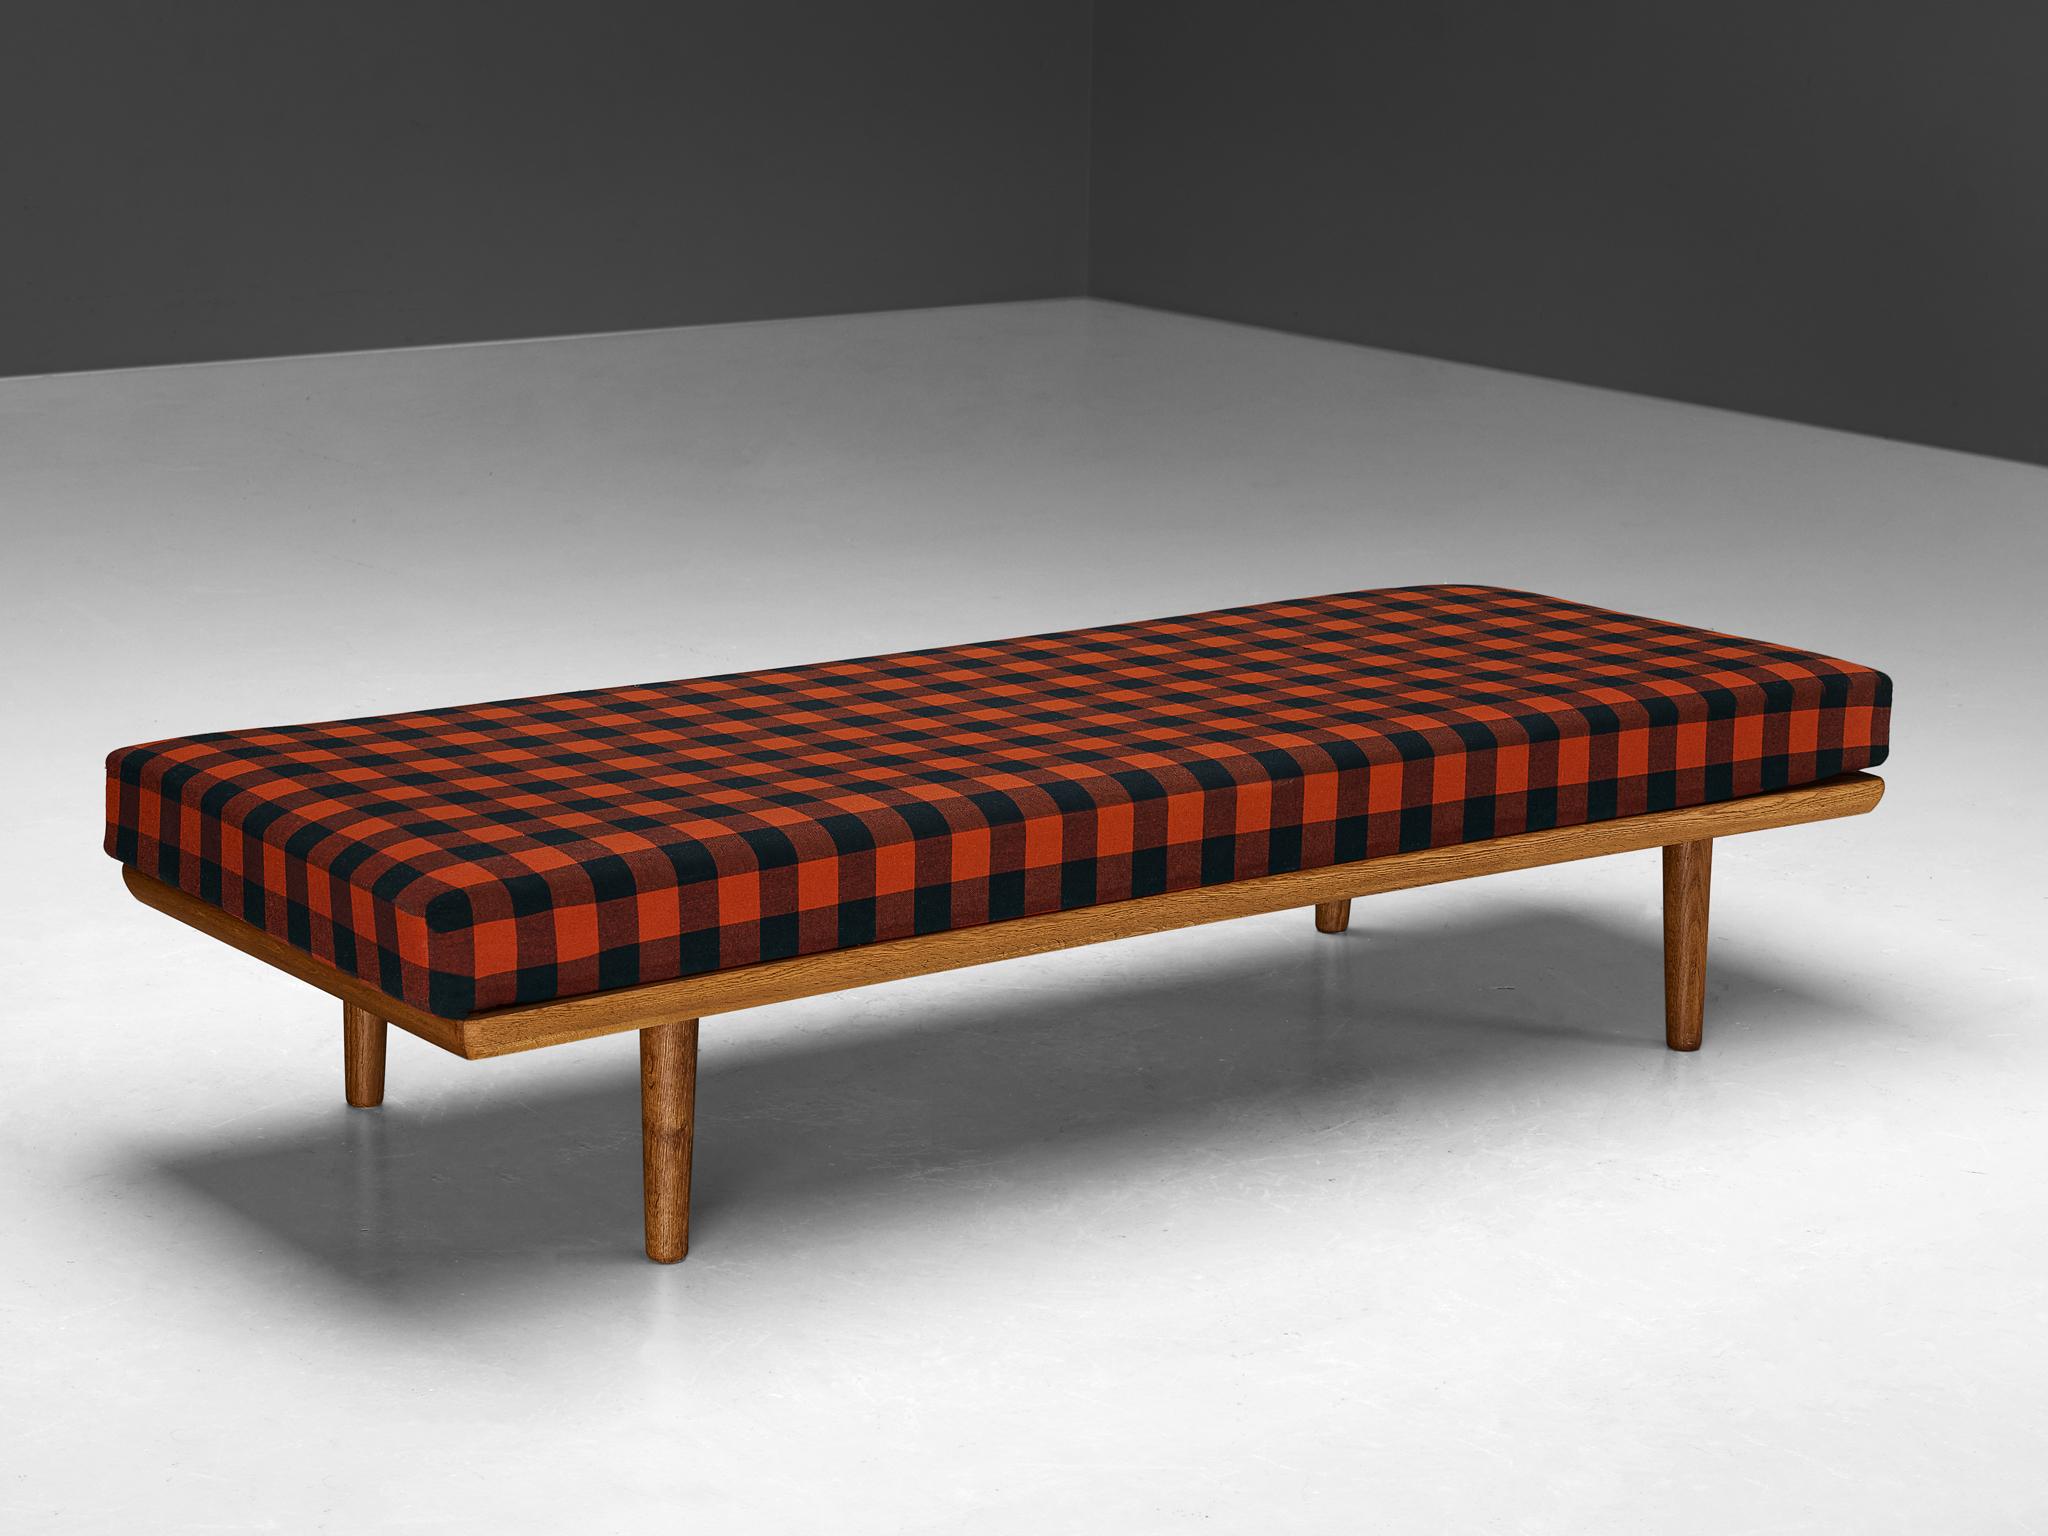 Liege, Eiche, Teakholz Skandinavien, 1960er Jahre

Ein einfaches und minimalistisches Bett, das in den 1960er Jahren in Skandinavien hergestellt wurde. Das Besondere an diesem Möbelstück ist die Matratze, die mit einem rot-schwarz karierten Stoff